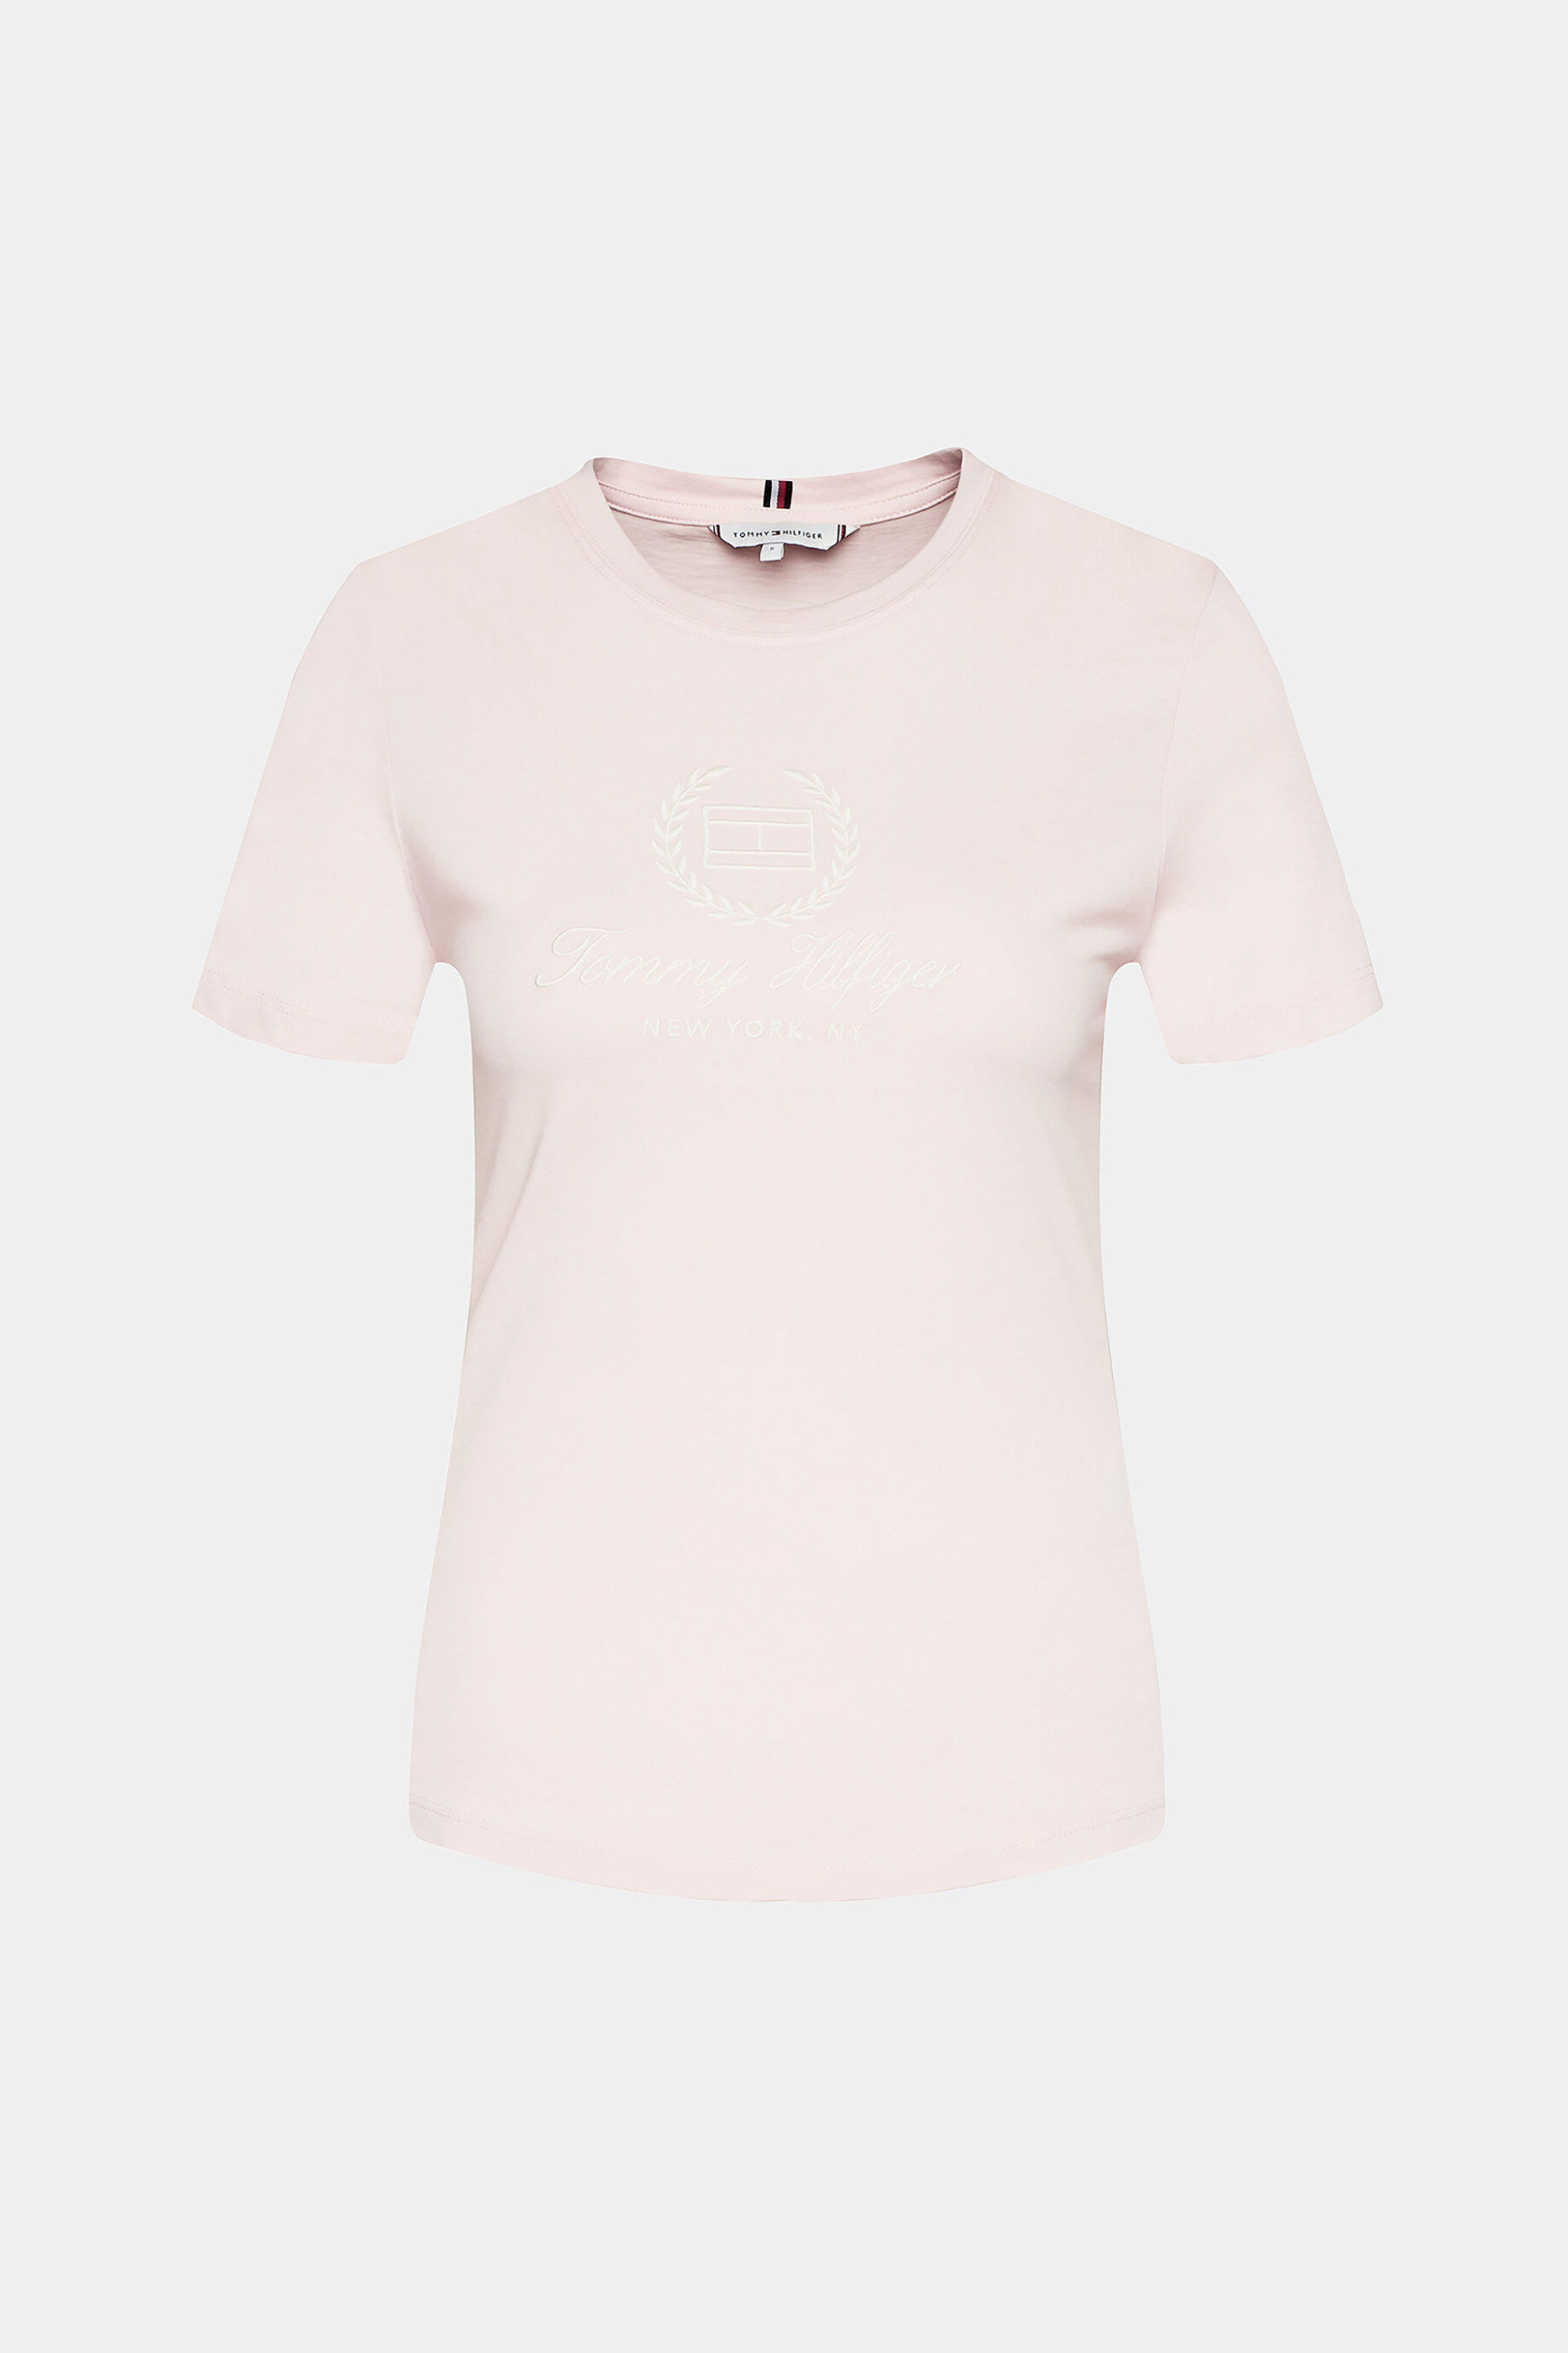 Γυναίκα > ΡΟΥΧΑ > Tops > T-Shirts Tommy Hilfiger γυναικείο T-shirt μονόχρωμο με contrast logo print Slim fit - WW0WW41761 Ροζ Ανοιχτό